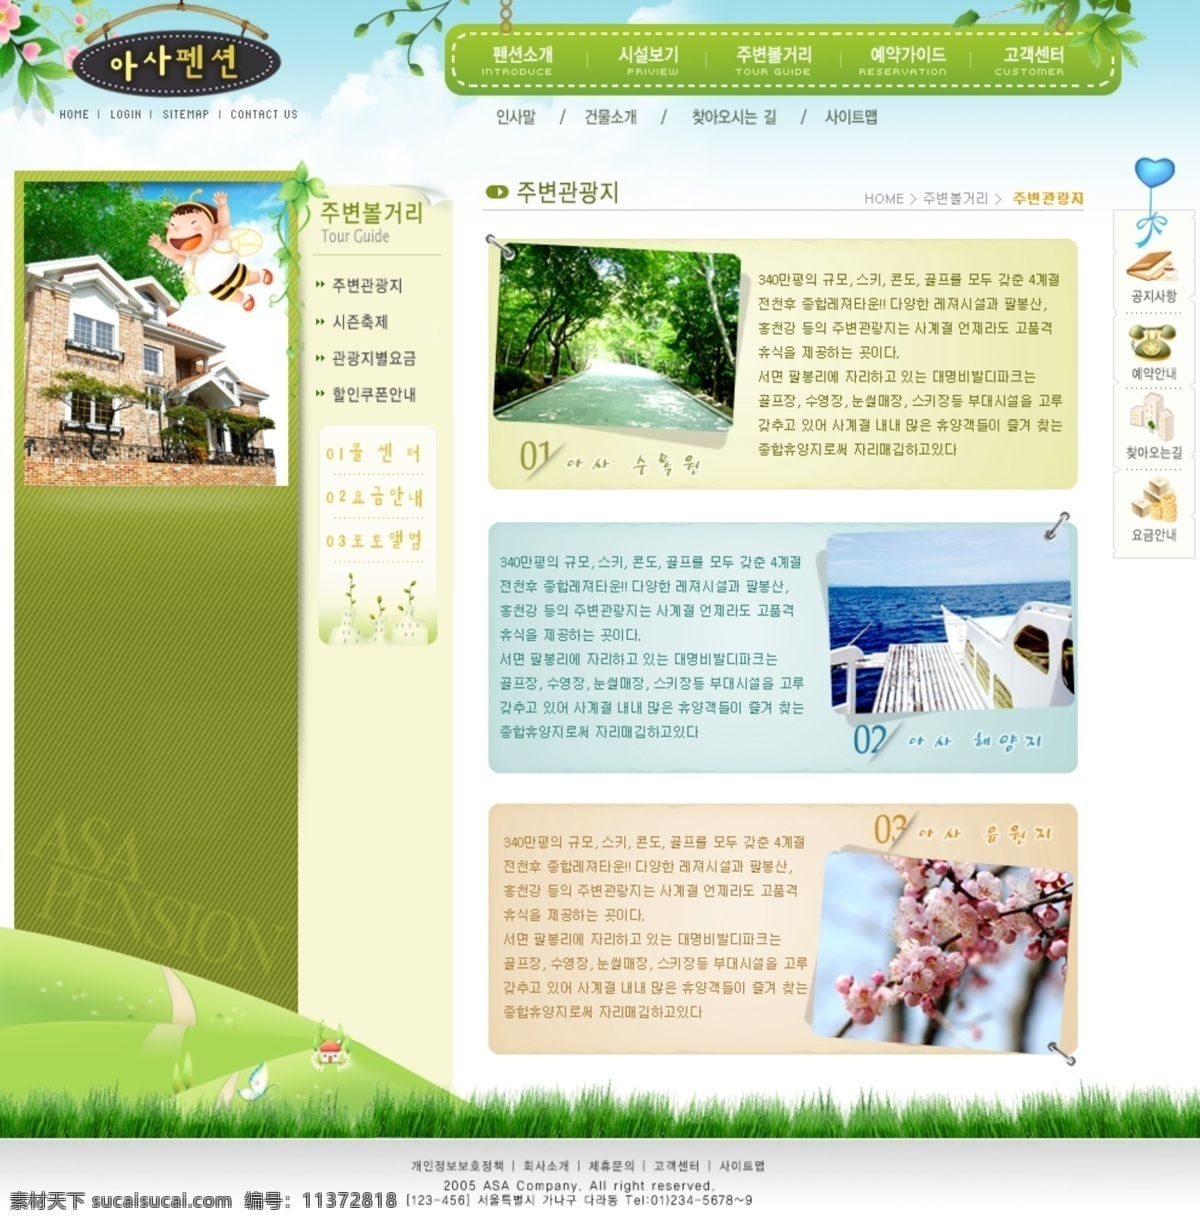 房地产 网页模板 韩国模板 源文件 房地产类 楼盘销售 绿色 清新 楼盘 销售网站 模板 网页素材